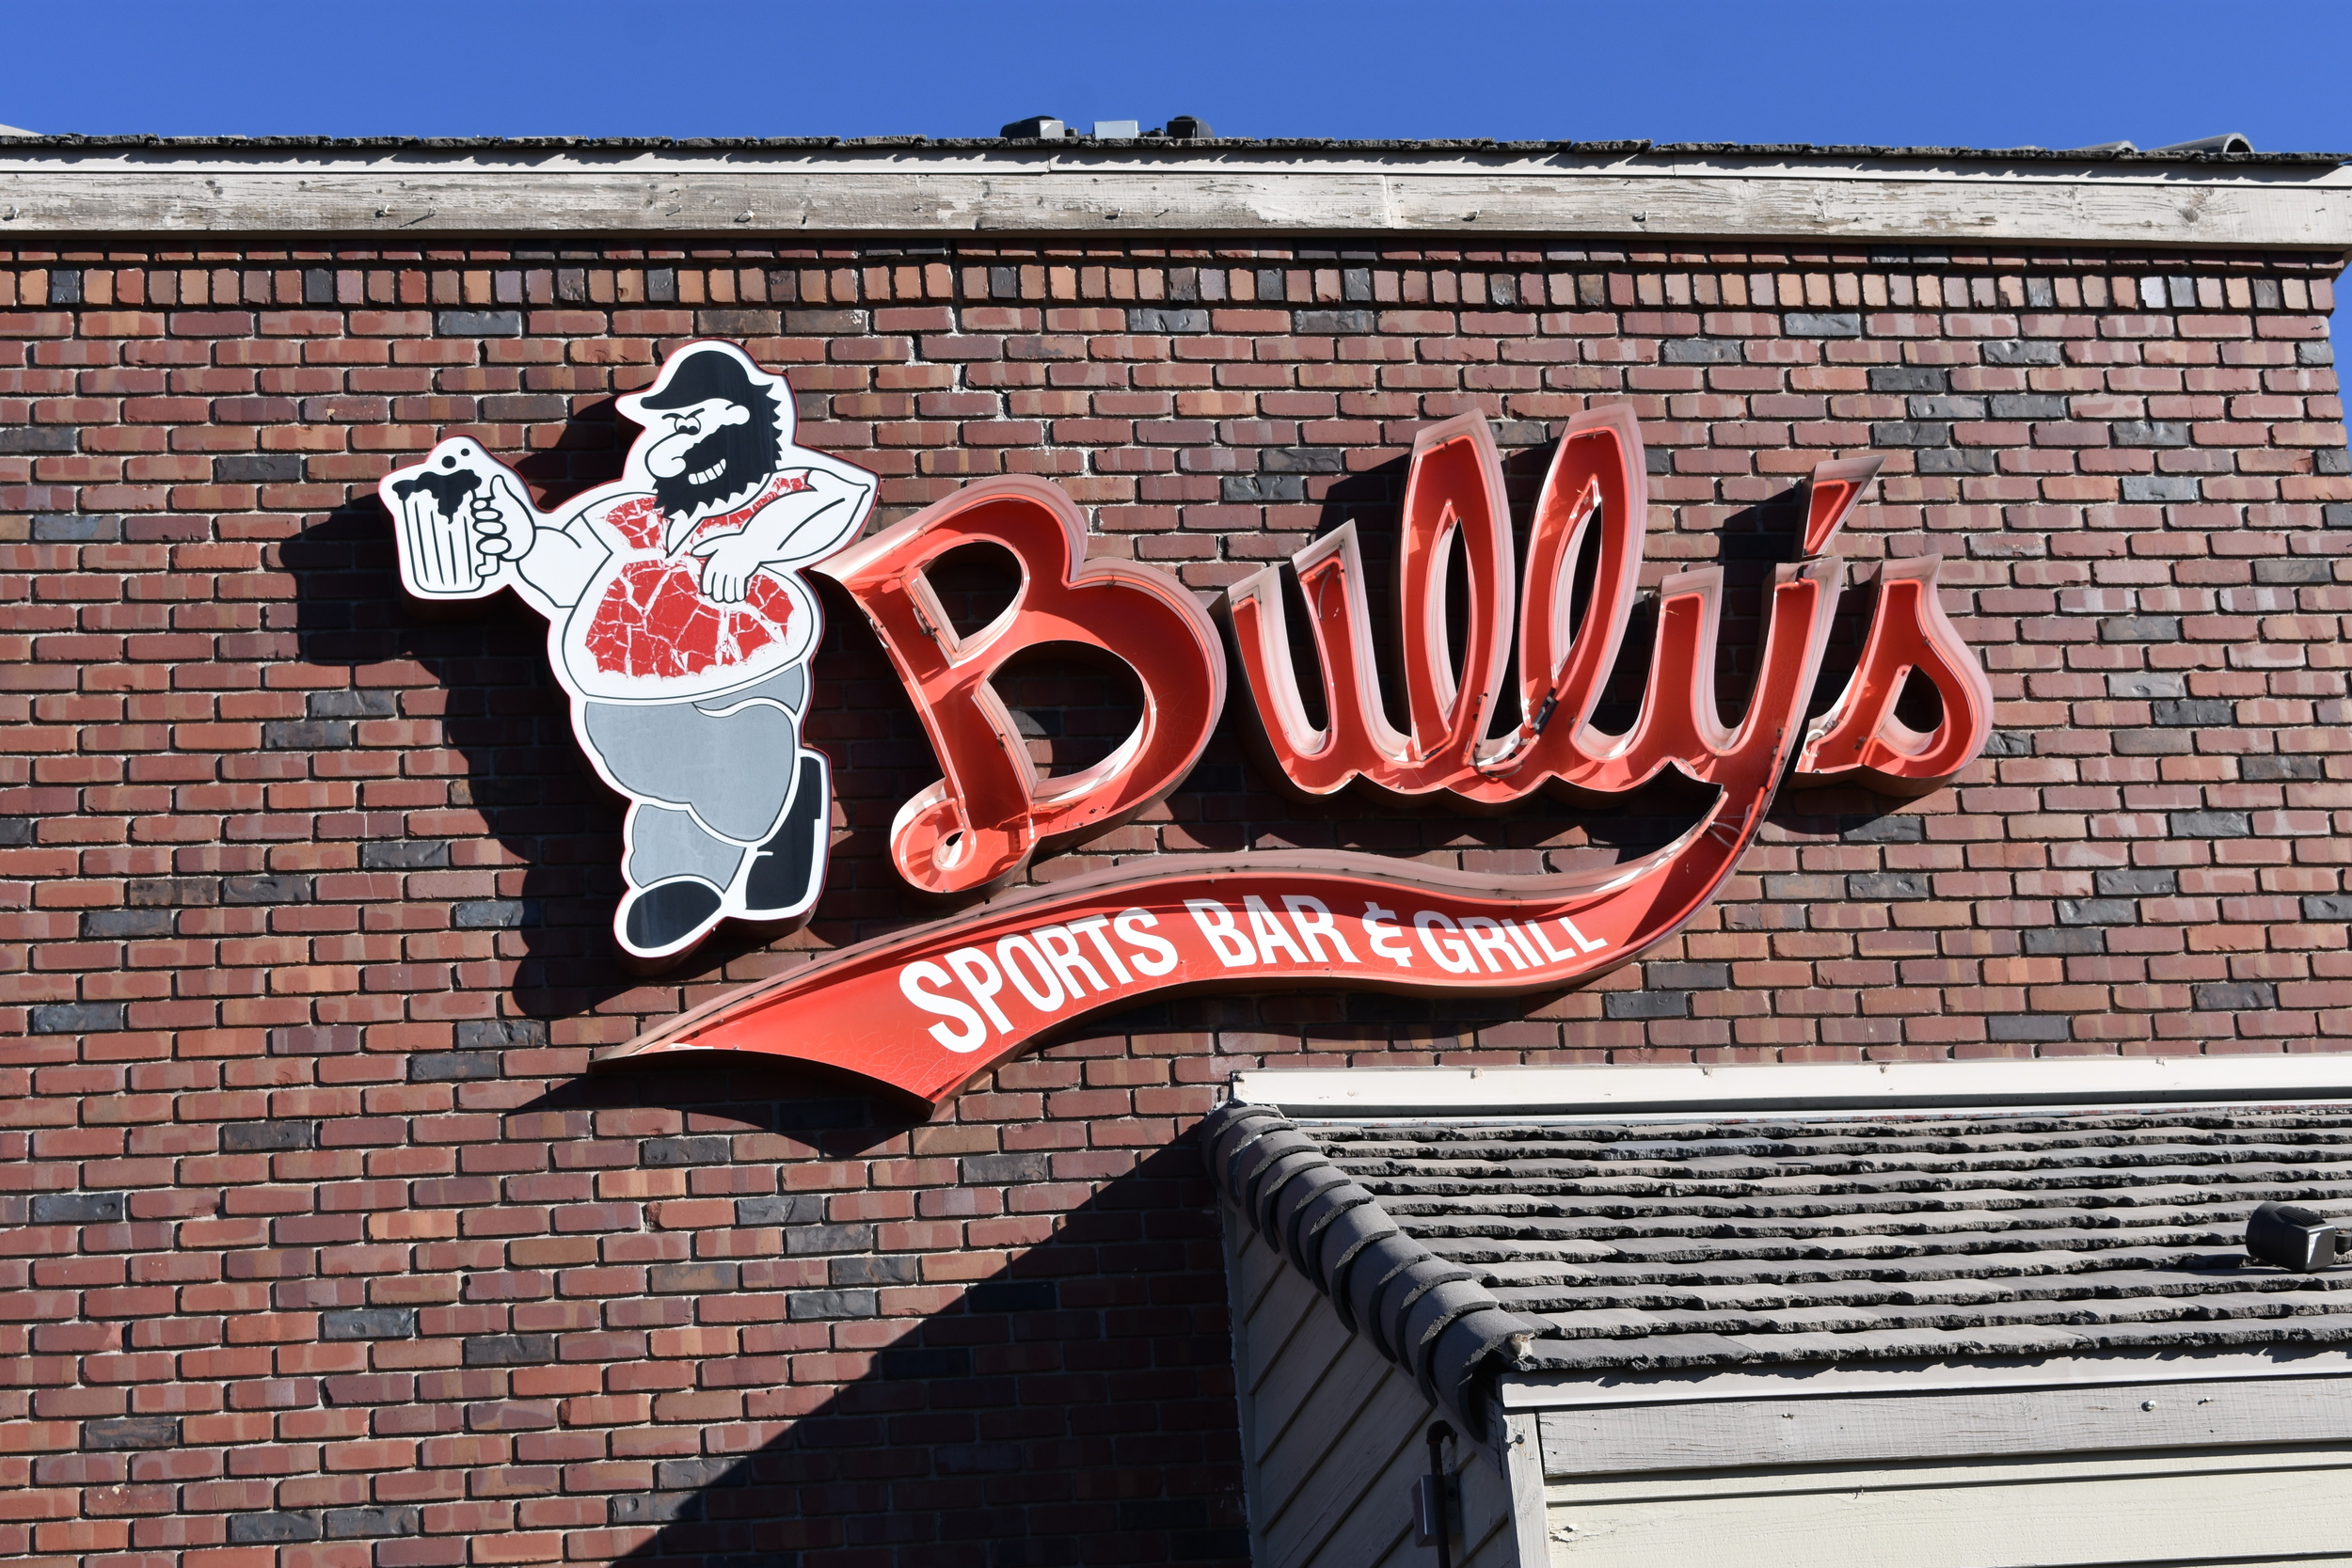 Bully's Sports Bar & Grill wall mounted sign, Reno, Nevada